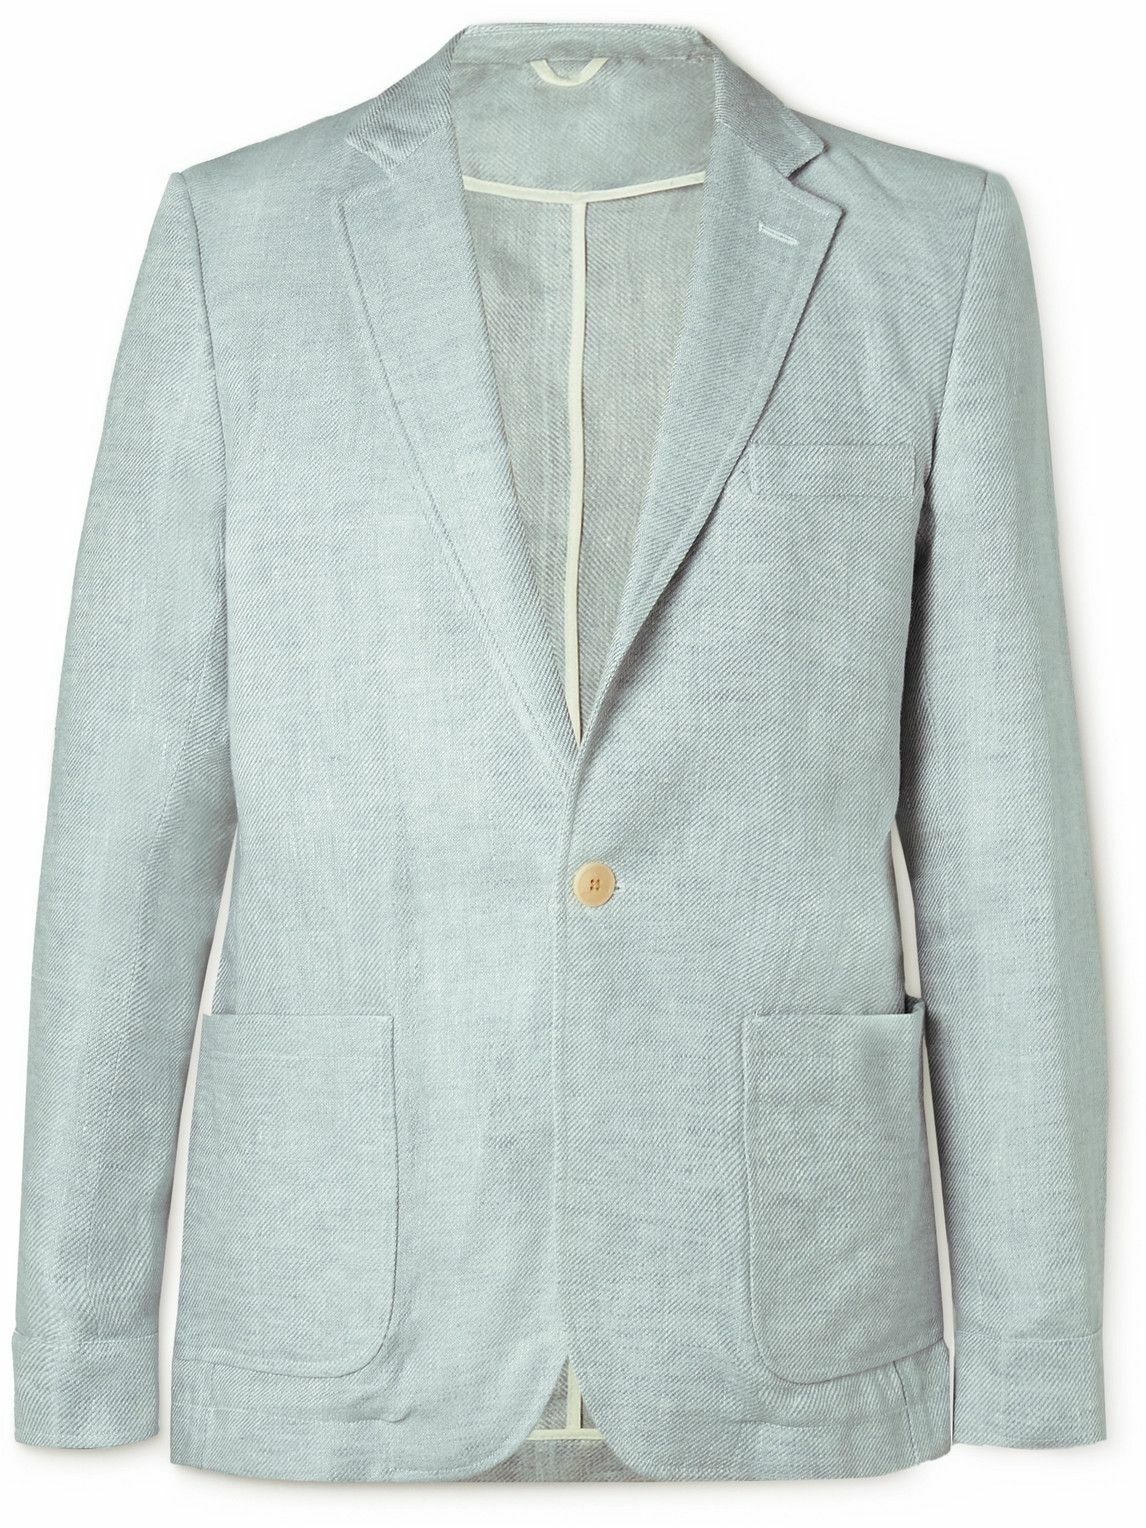 Oliver Spencer - Fairway Linen Suit Jacket - Blue Oliver Spencer